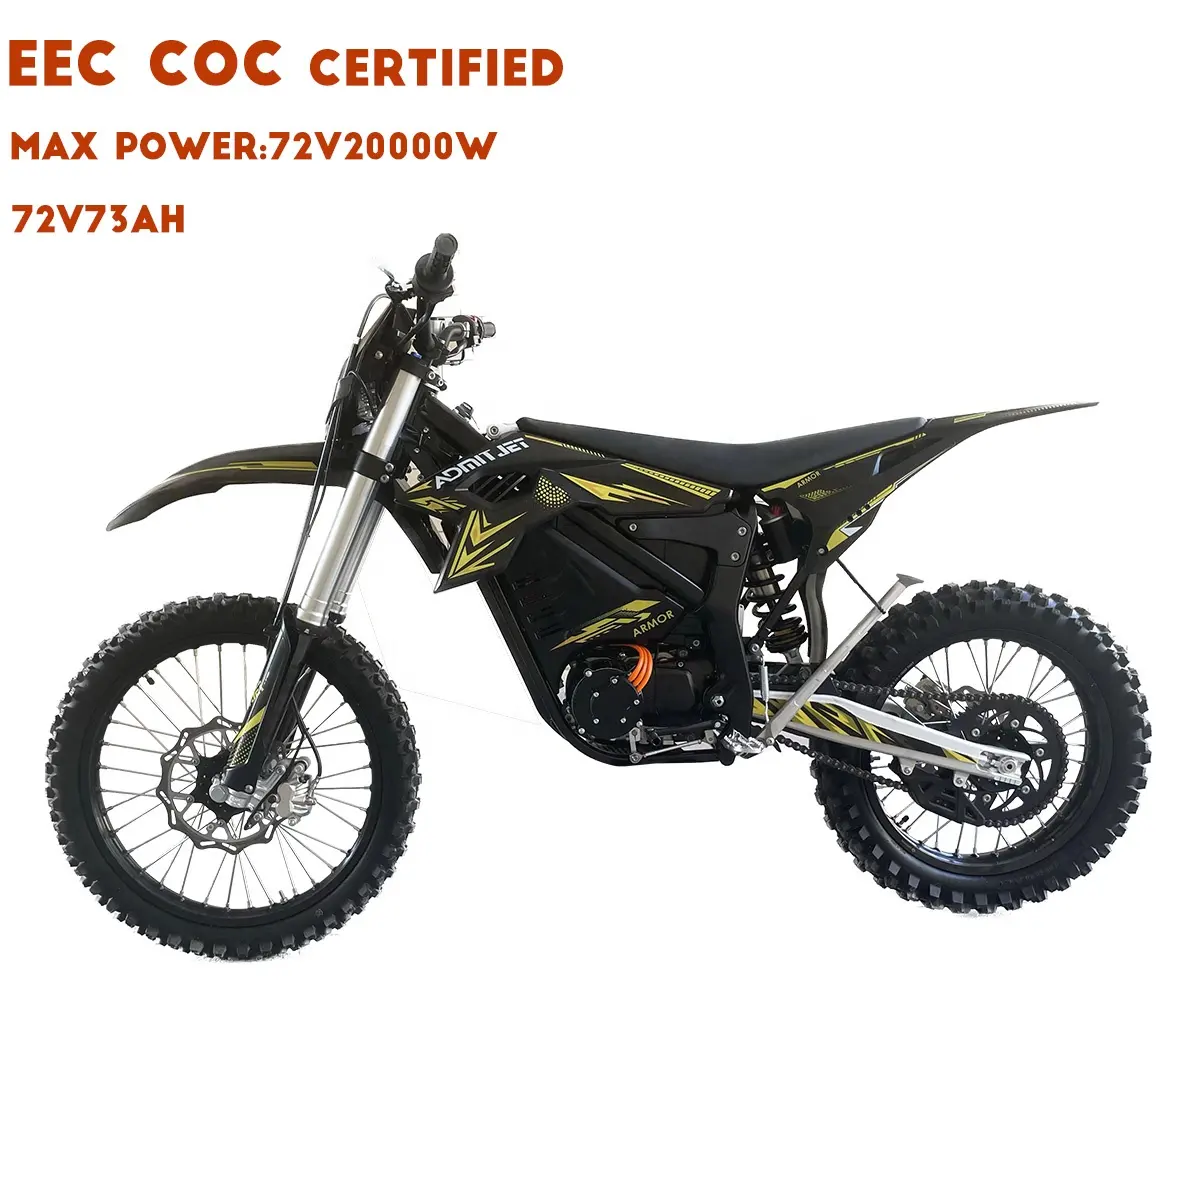 Vélo tout-terrain électrique CEE COC moto tout-terrain puissante longue portée hors route haute puissance montagne E Ride Pro E Dirt Bike